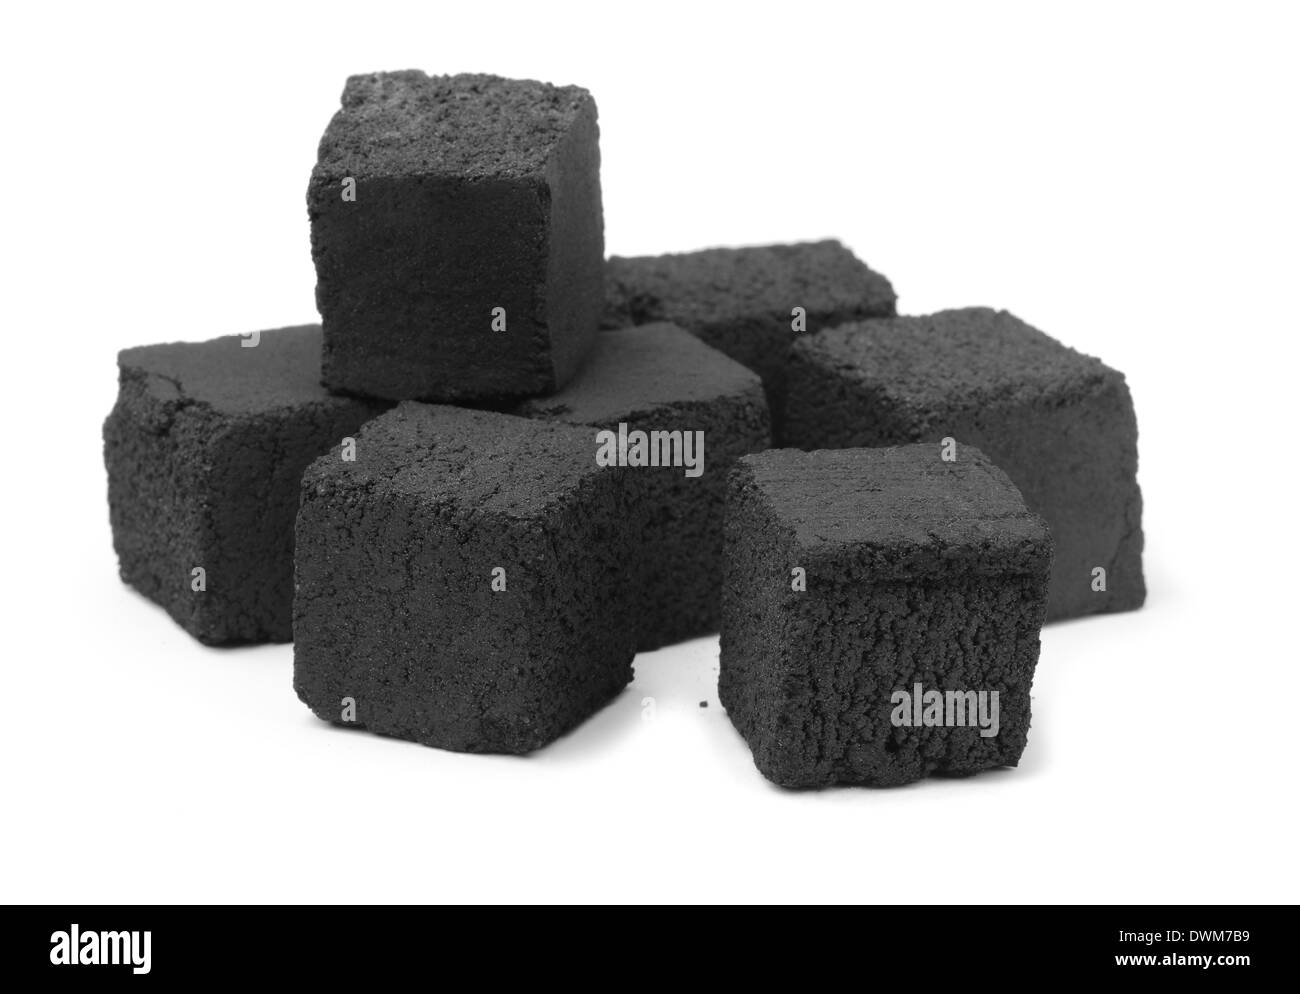 Groupe de cubes de charbon isolated on white Banque D'Images